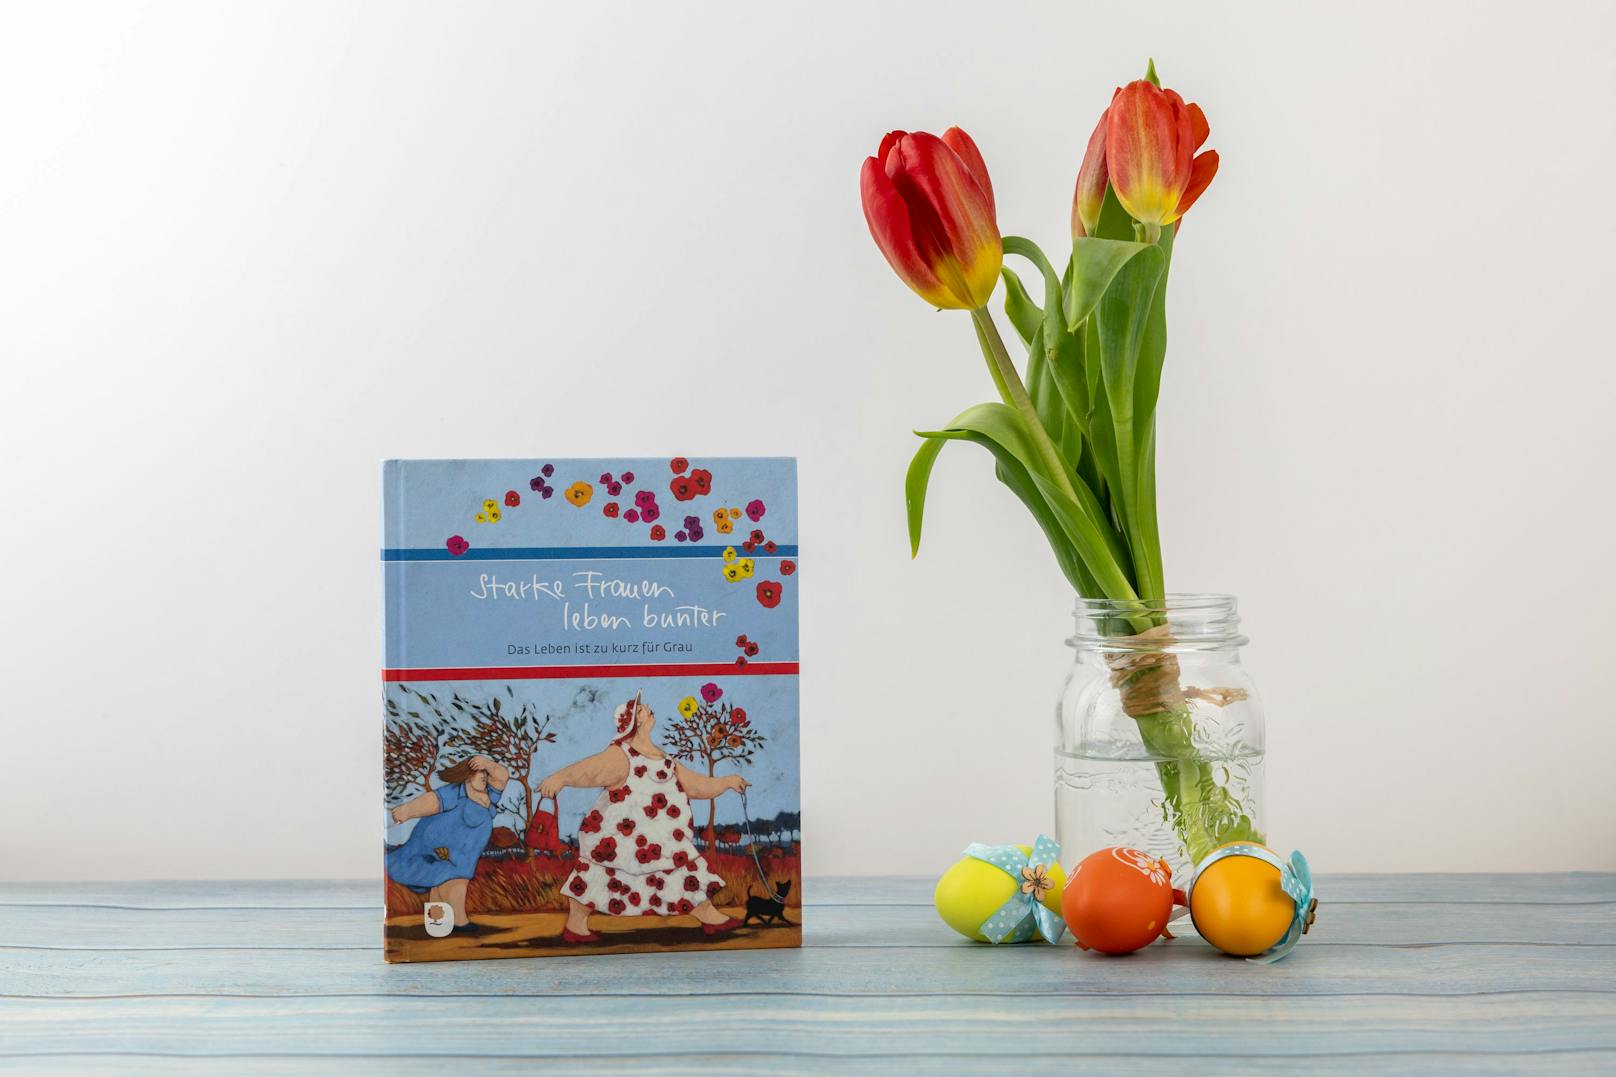 Bookbot empfiehlt zu Ostern das inspirierende und farbenfrohe Buch "Starke Frauen leben bunter" von Lisandro Rota und Ilka Osenberg-van Vugt.